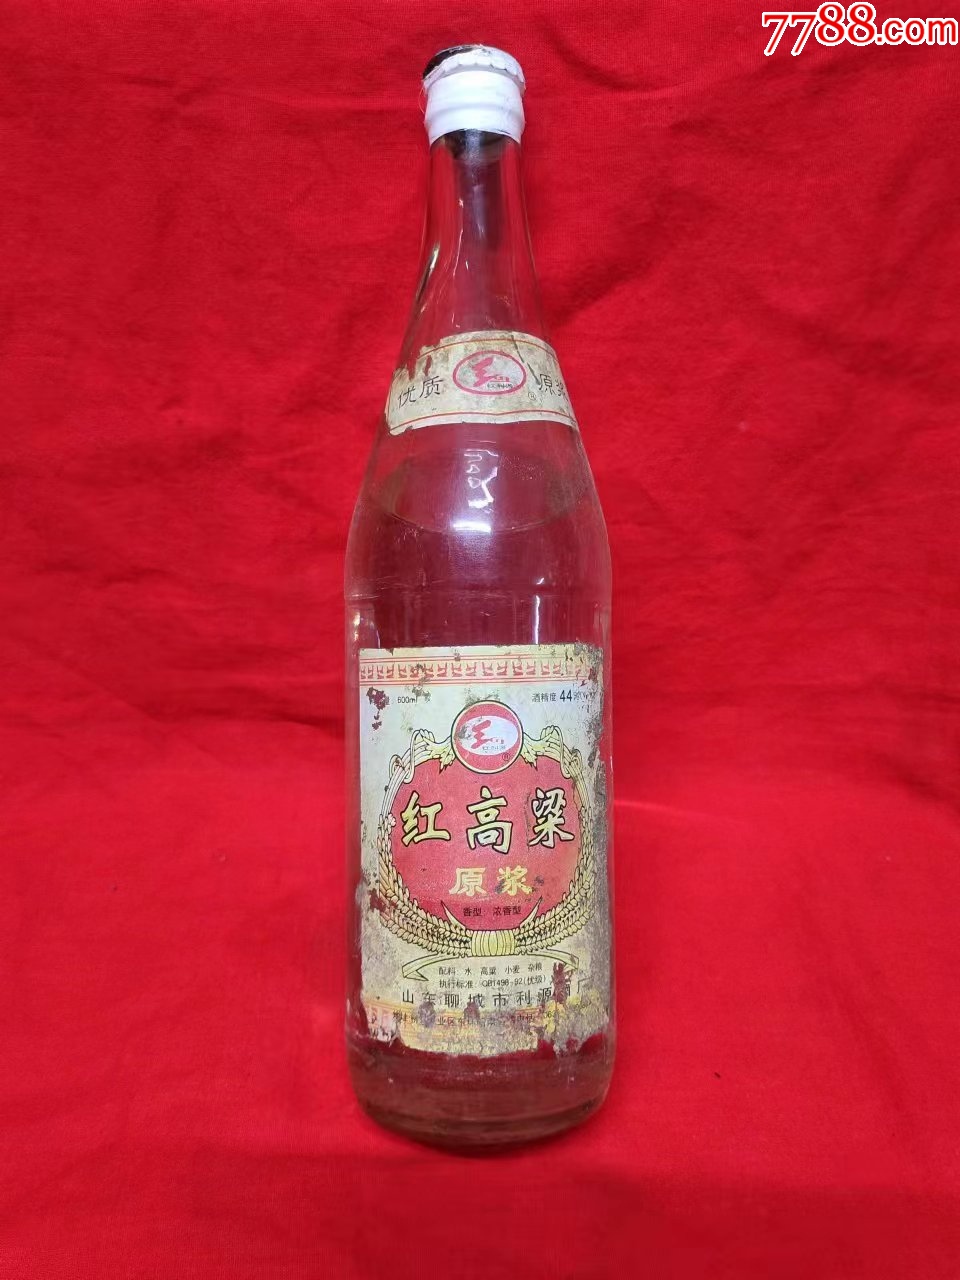 红高粱2006年的老酒图片